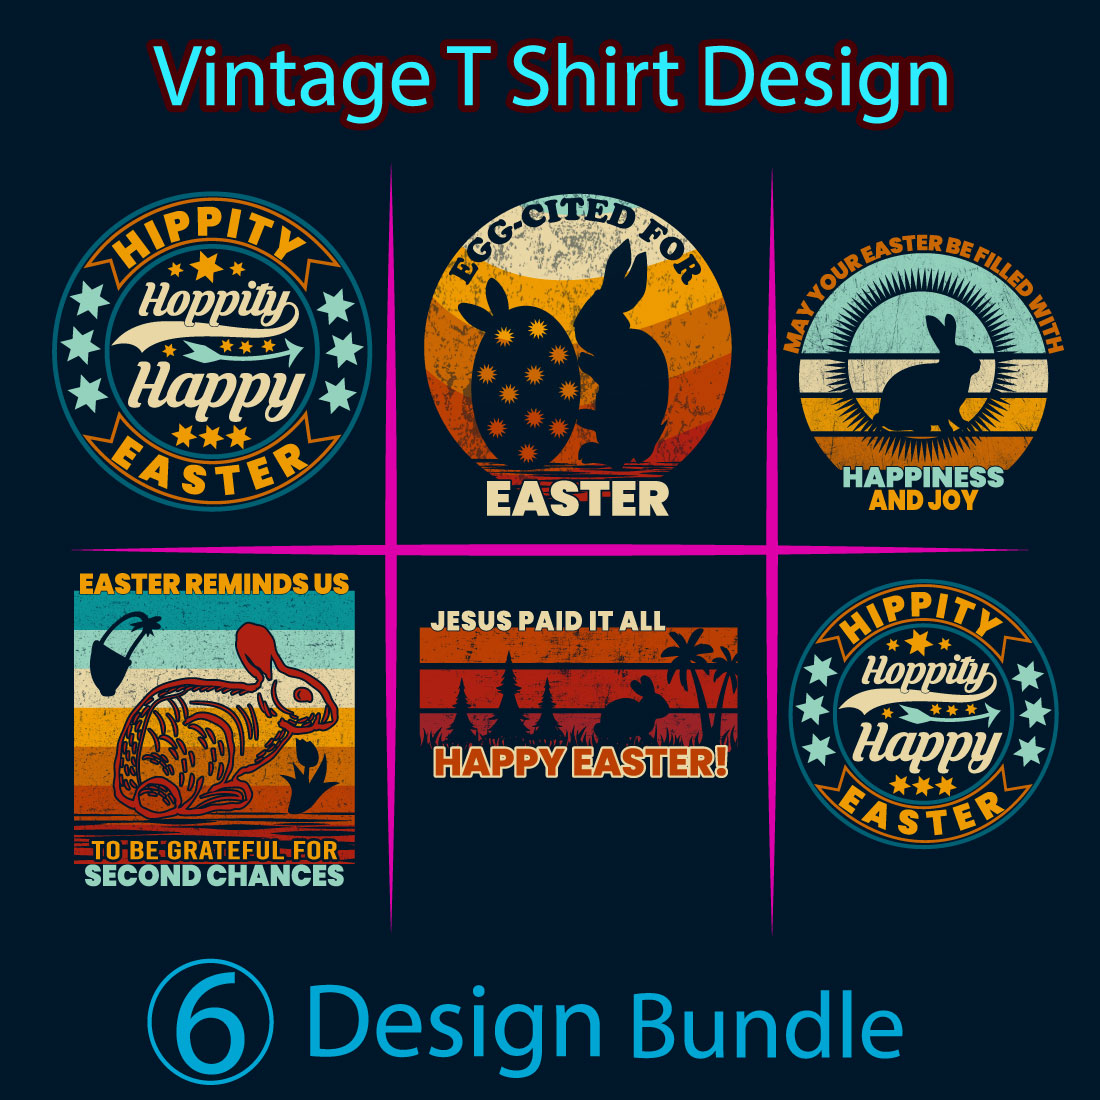 Easter vintage t-shirt design cover image.